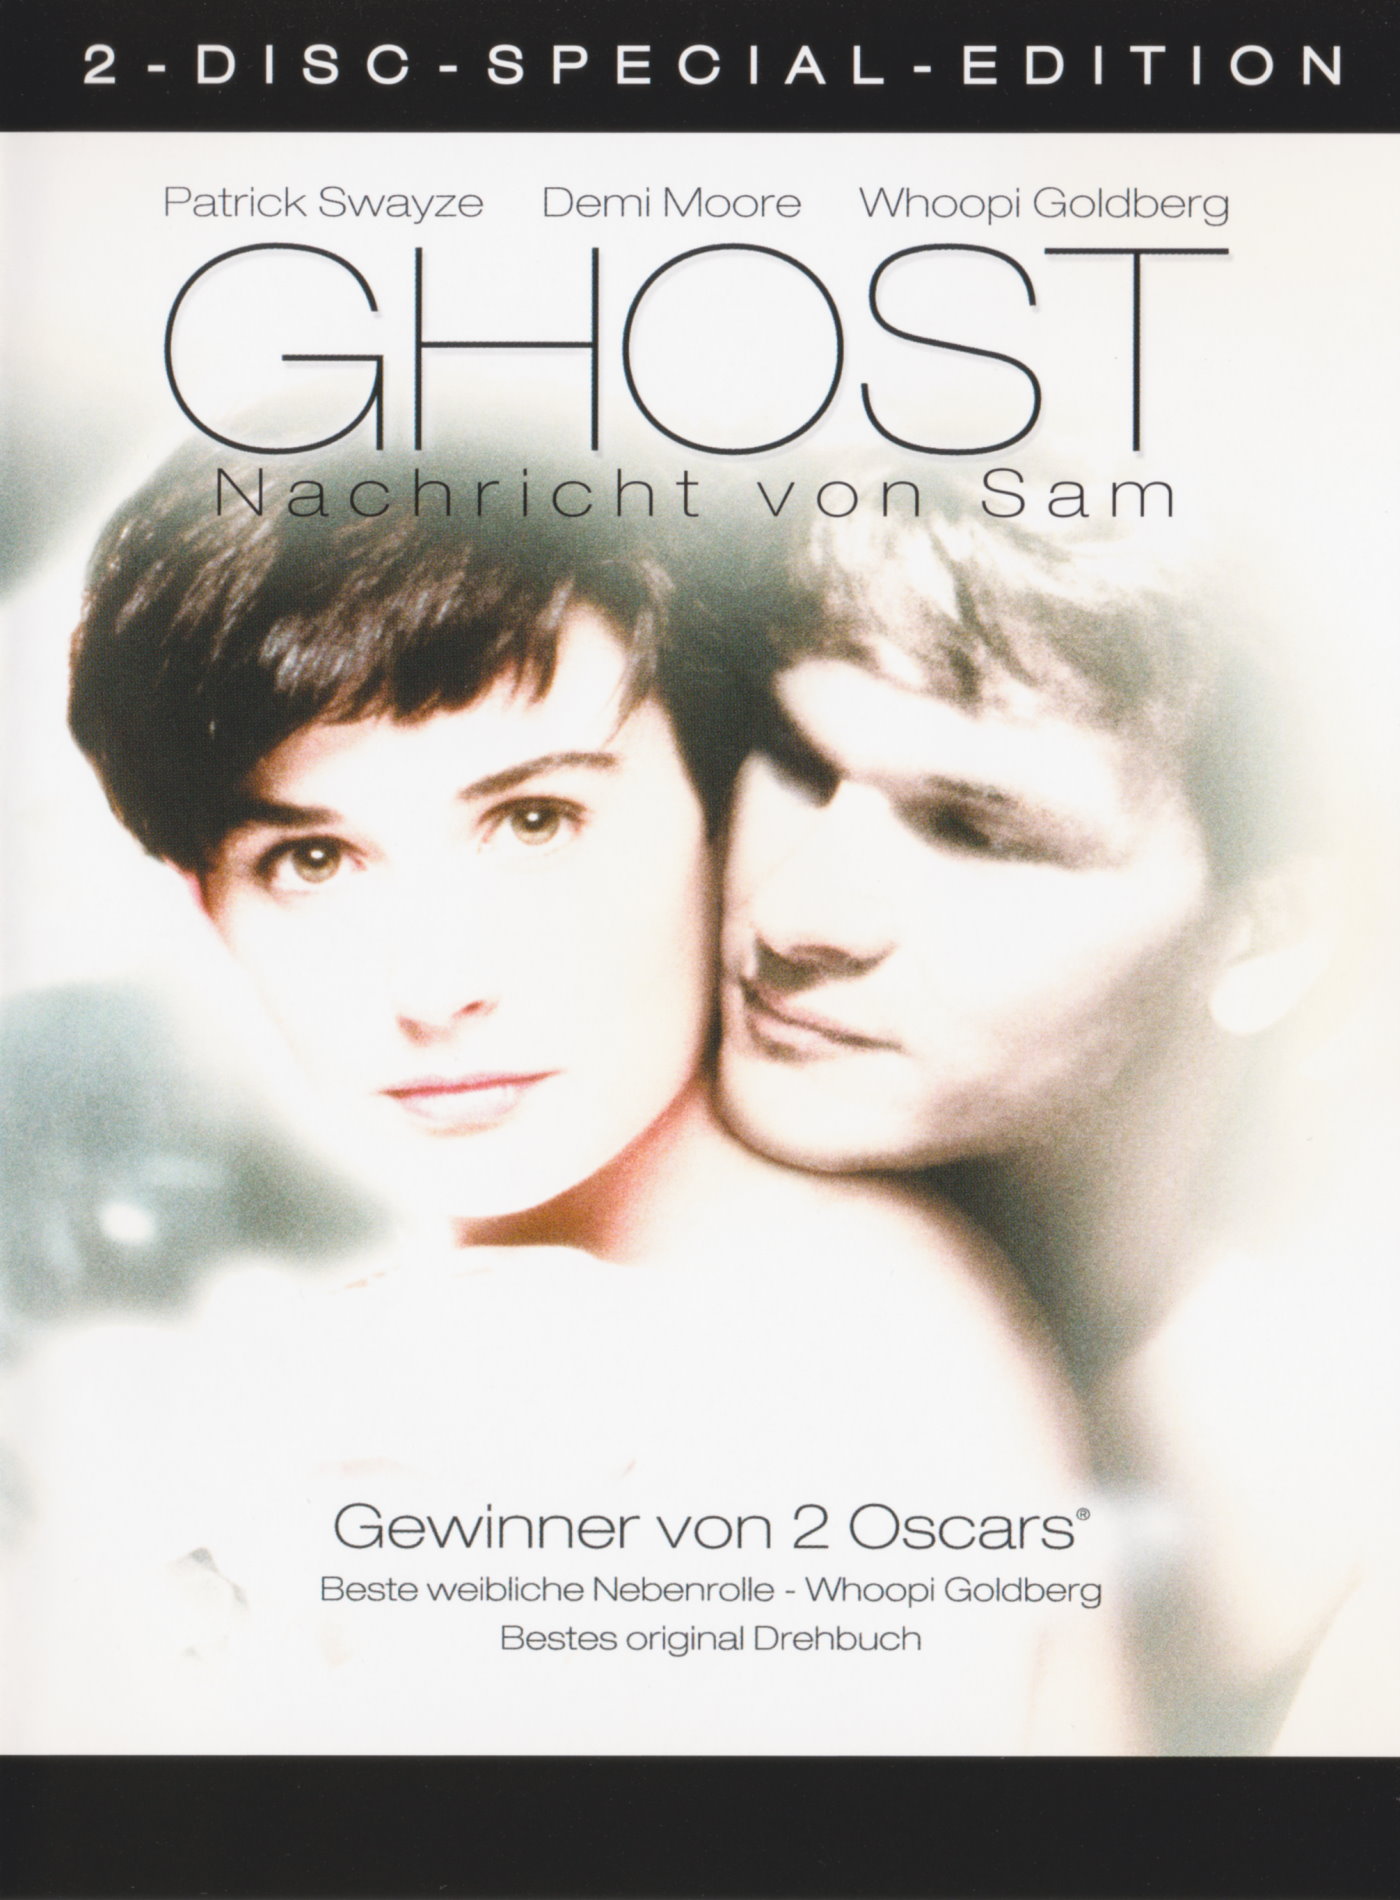 Cover - Ghost - Nachricht von Sam.jpg